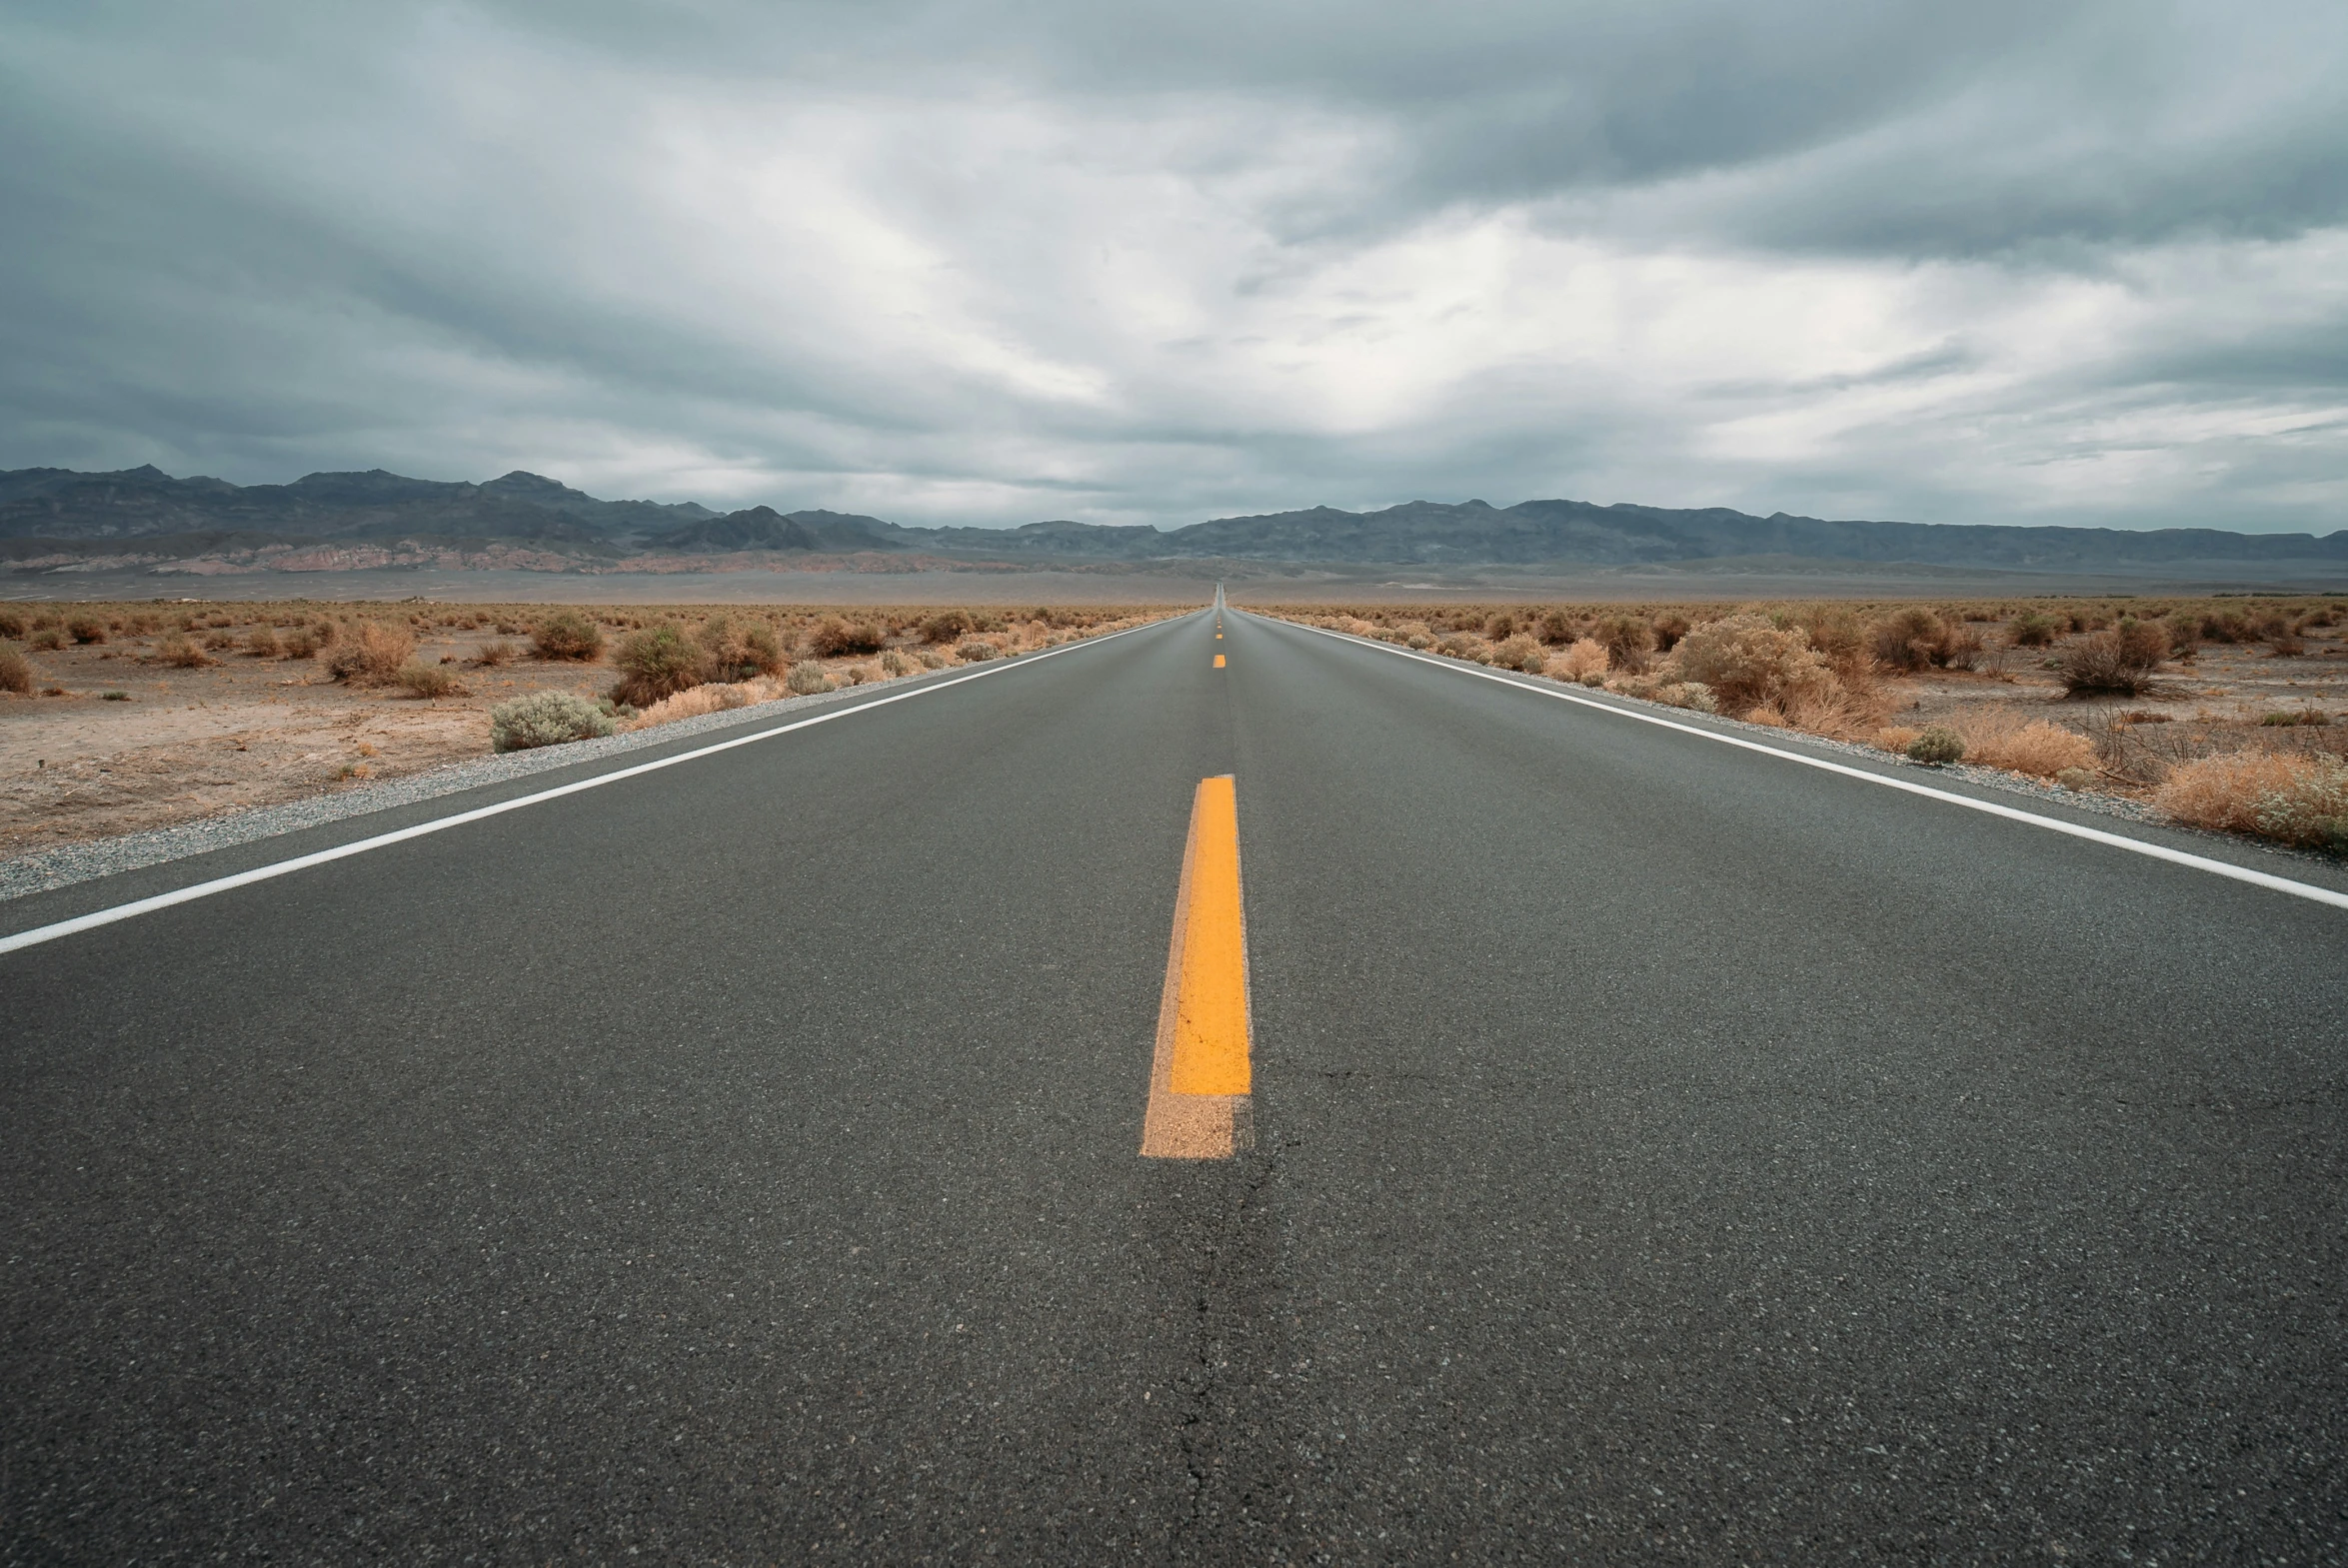 the asphalt road in the desert has two orange stripes